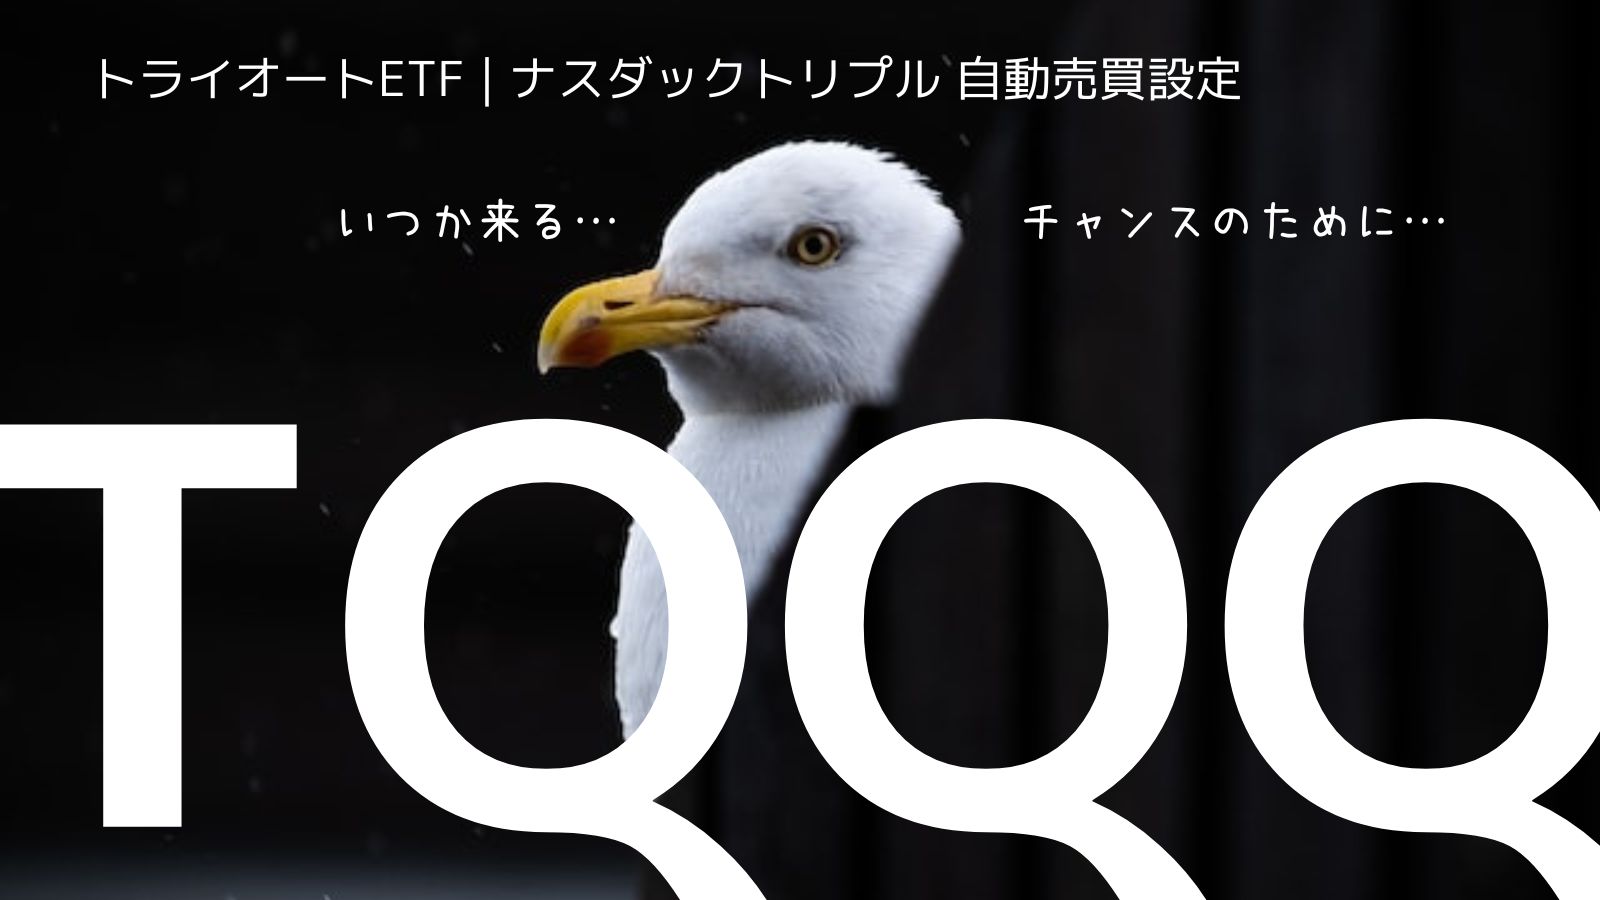 【ETF | CFD】トライオートETF TQQQ ナスダックトリプル自動売買設定